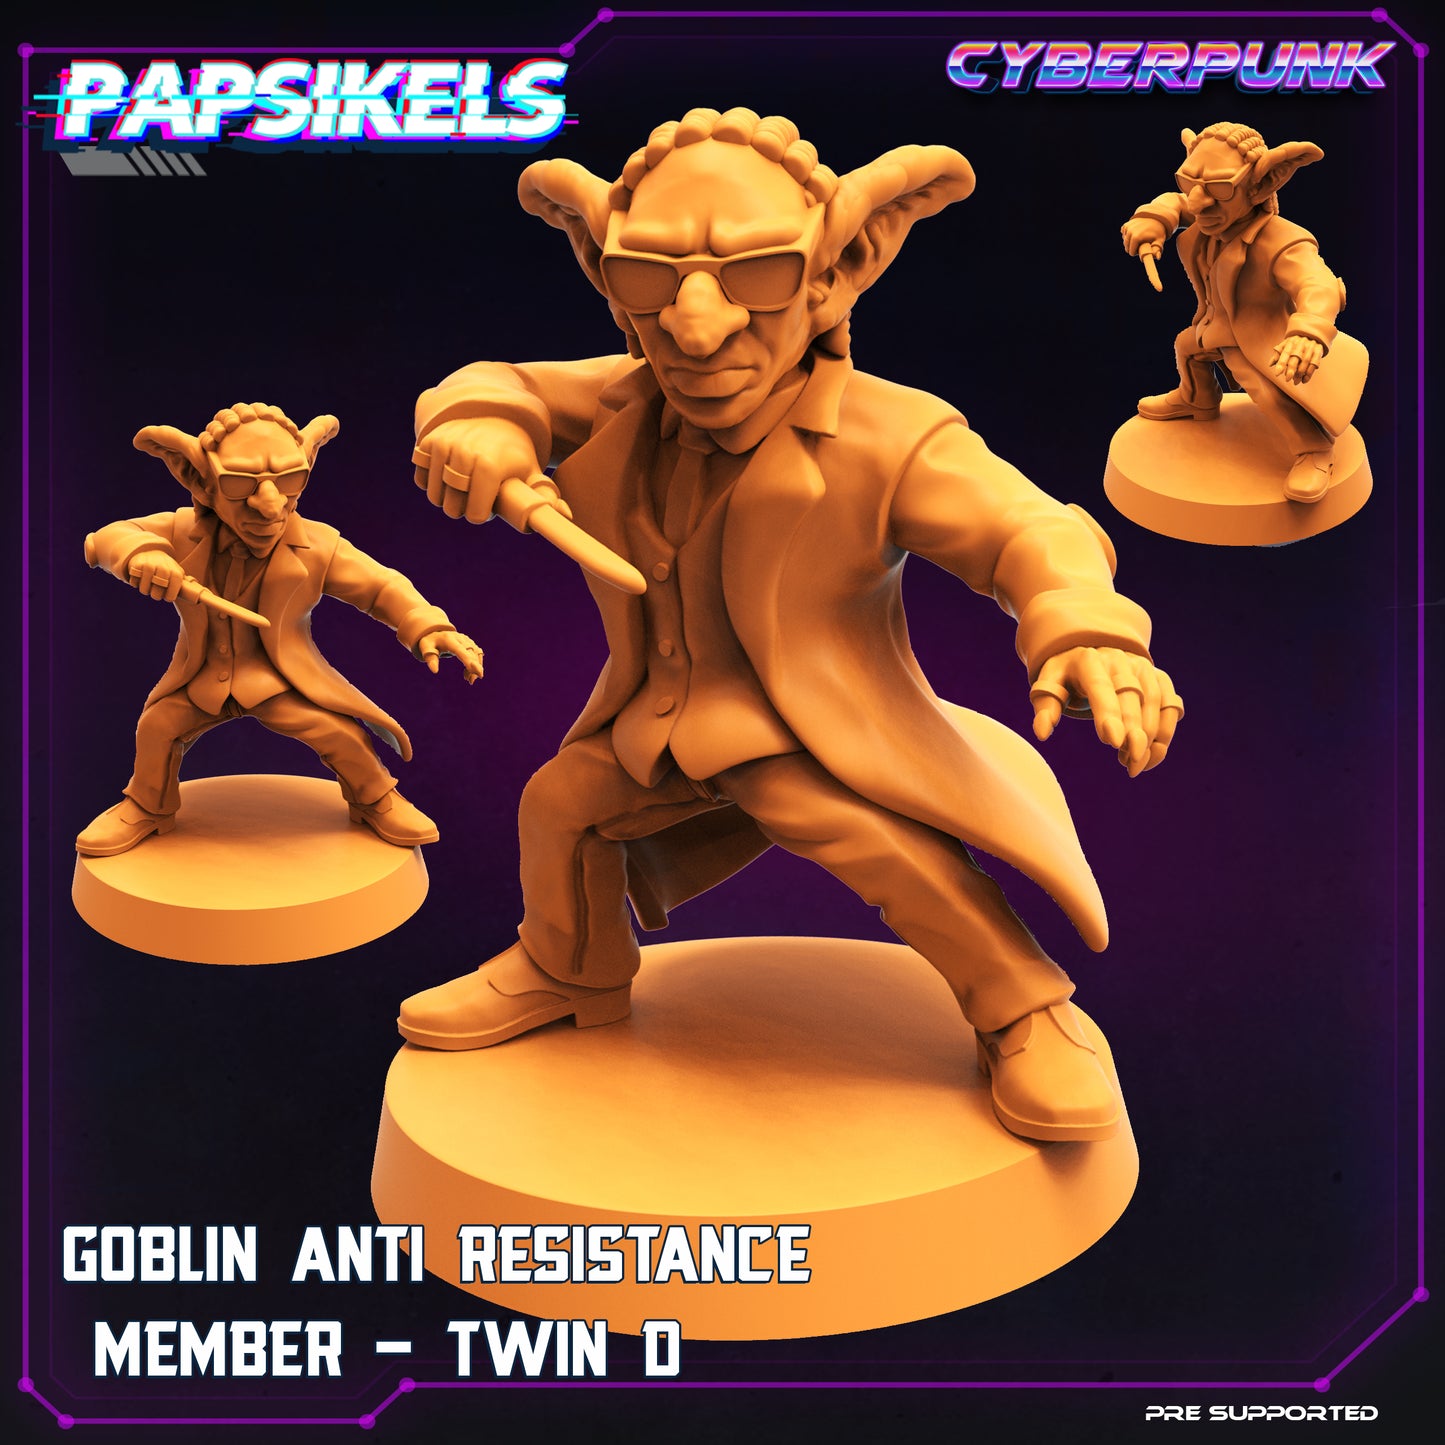 Goblin awaken  1 by Papsikels